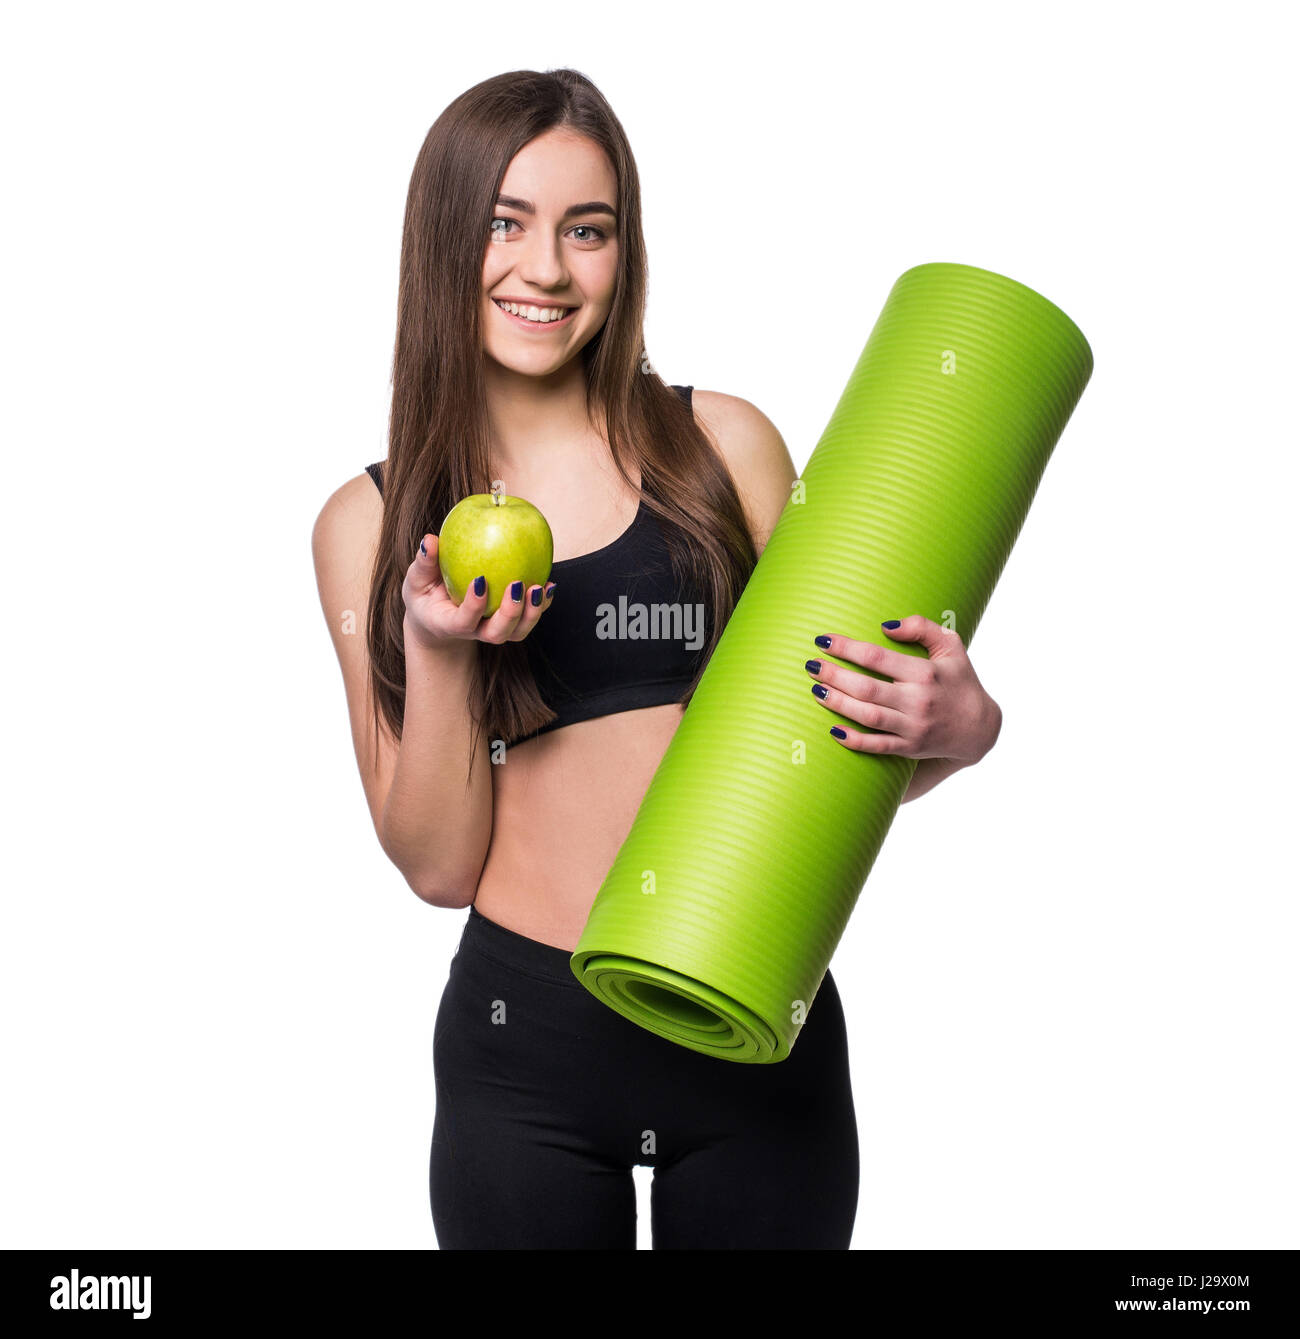 Portrait of smiling young woman holding rolled up exercice tapis de yoga et pomme verte isolée sur fond blanc Banque D'Images